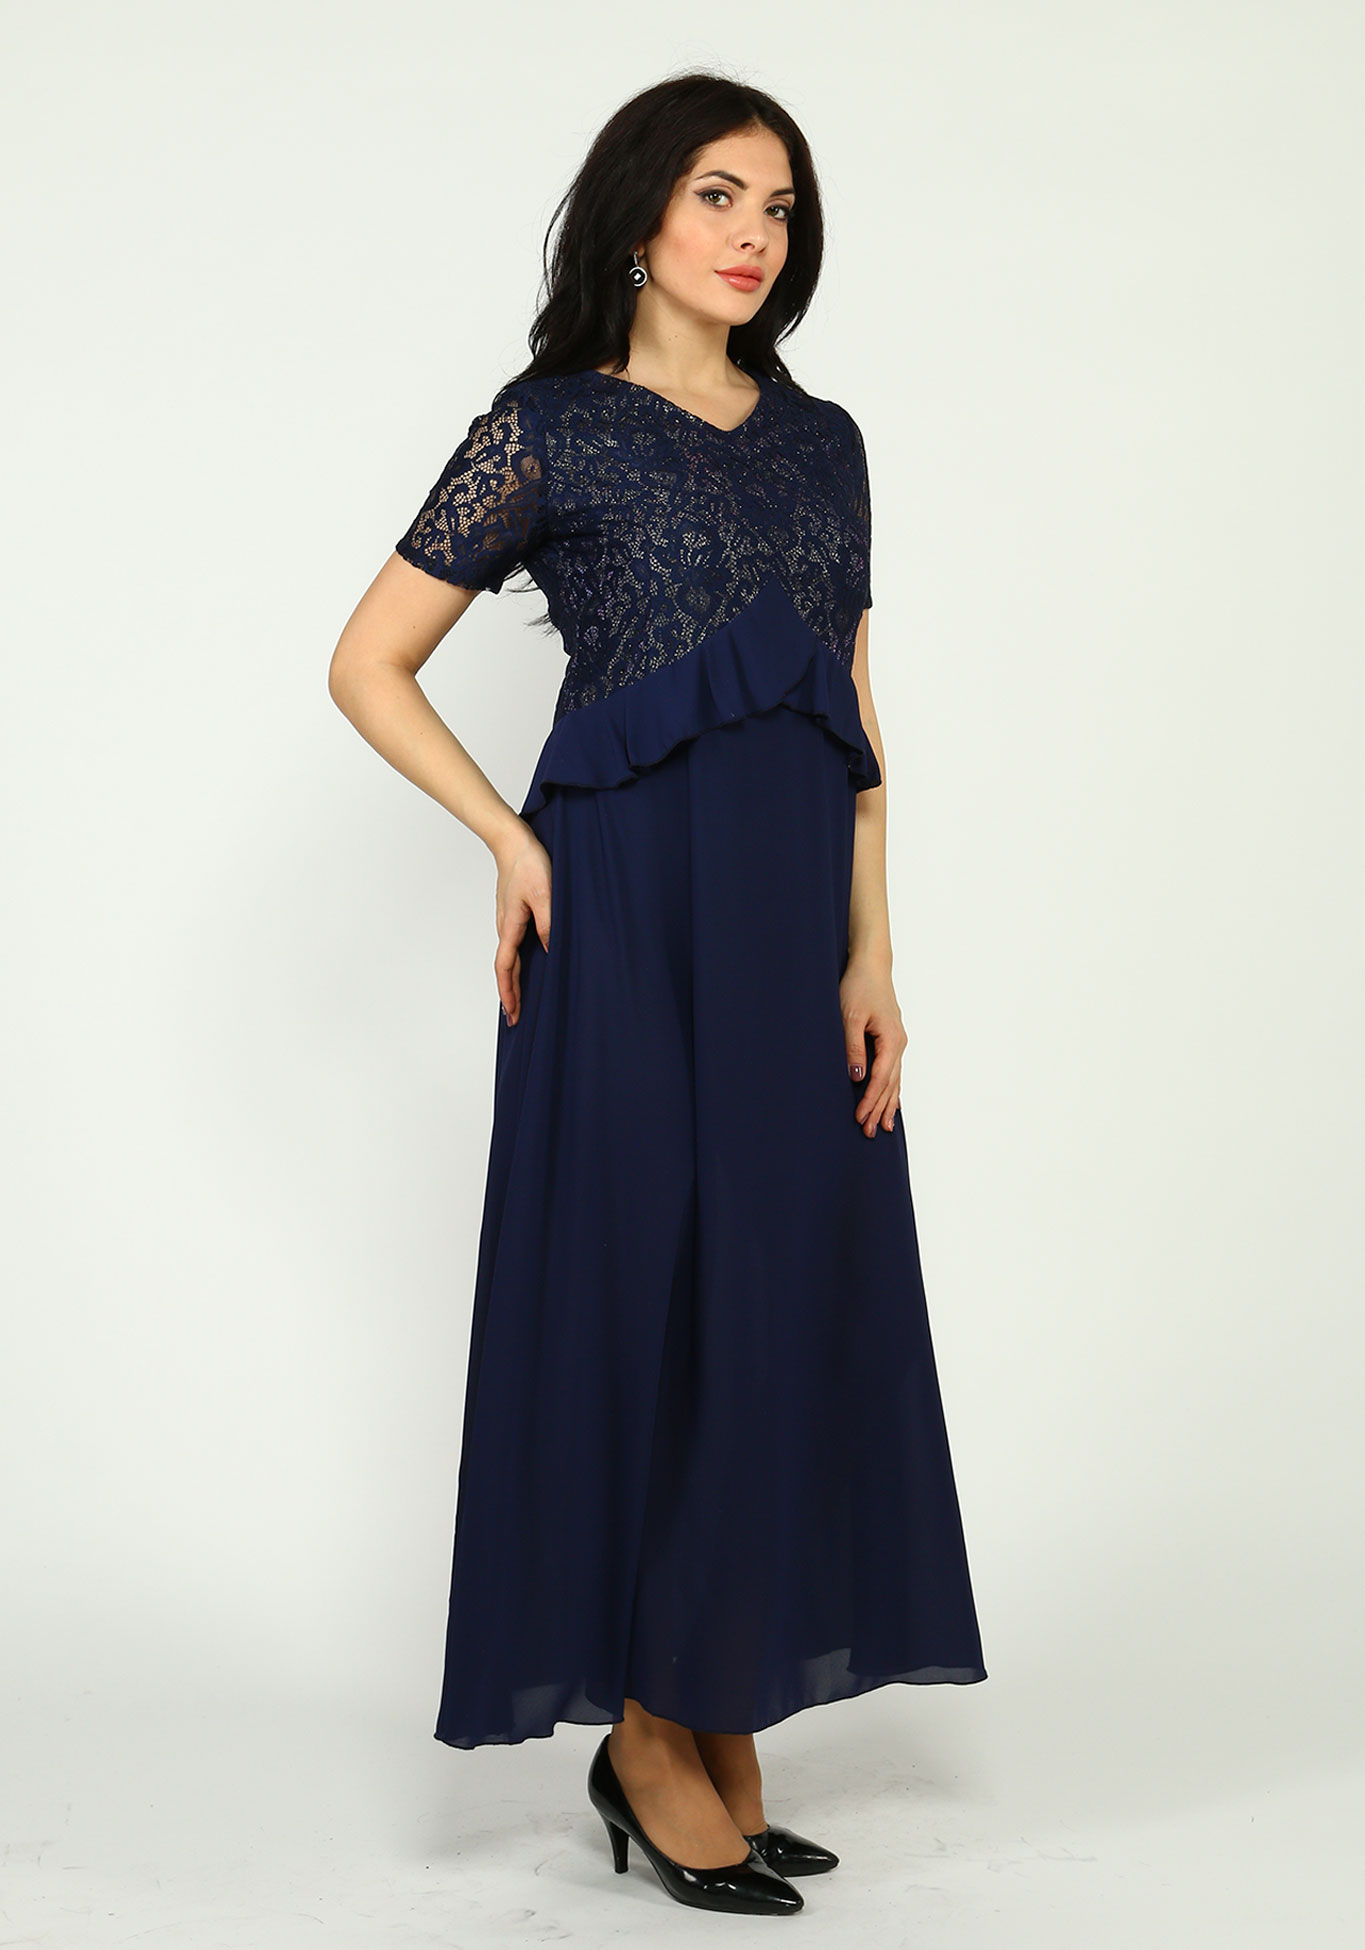 Платье с кружевом длиной макси Bel Fiore, размер 48, цвет синий - фото 3